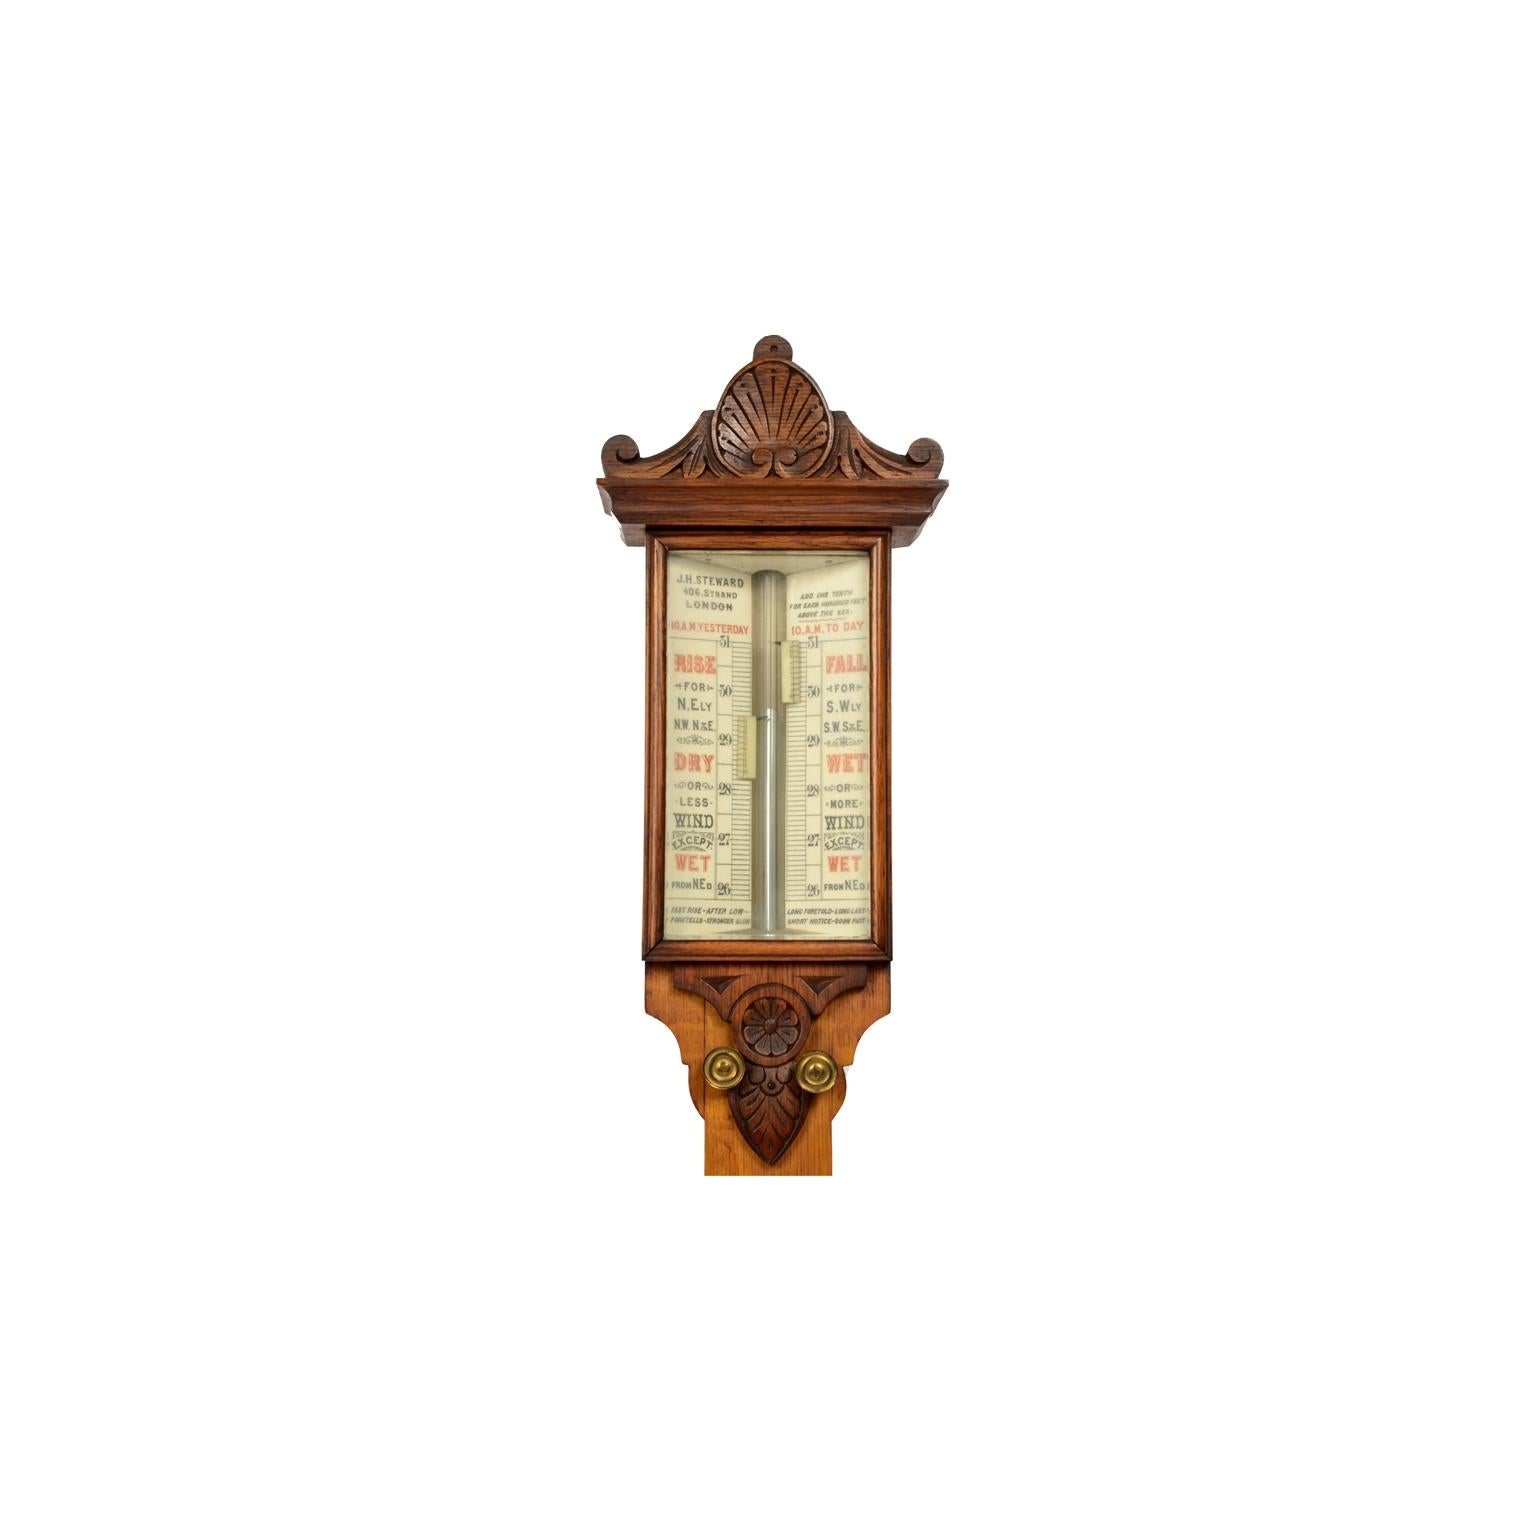 Baromètre et thermomètre de la fin du 19e siècle de J. H. Stewar, modèle météorologique ancien en vente 9